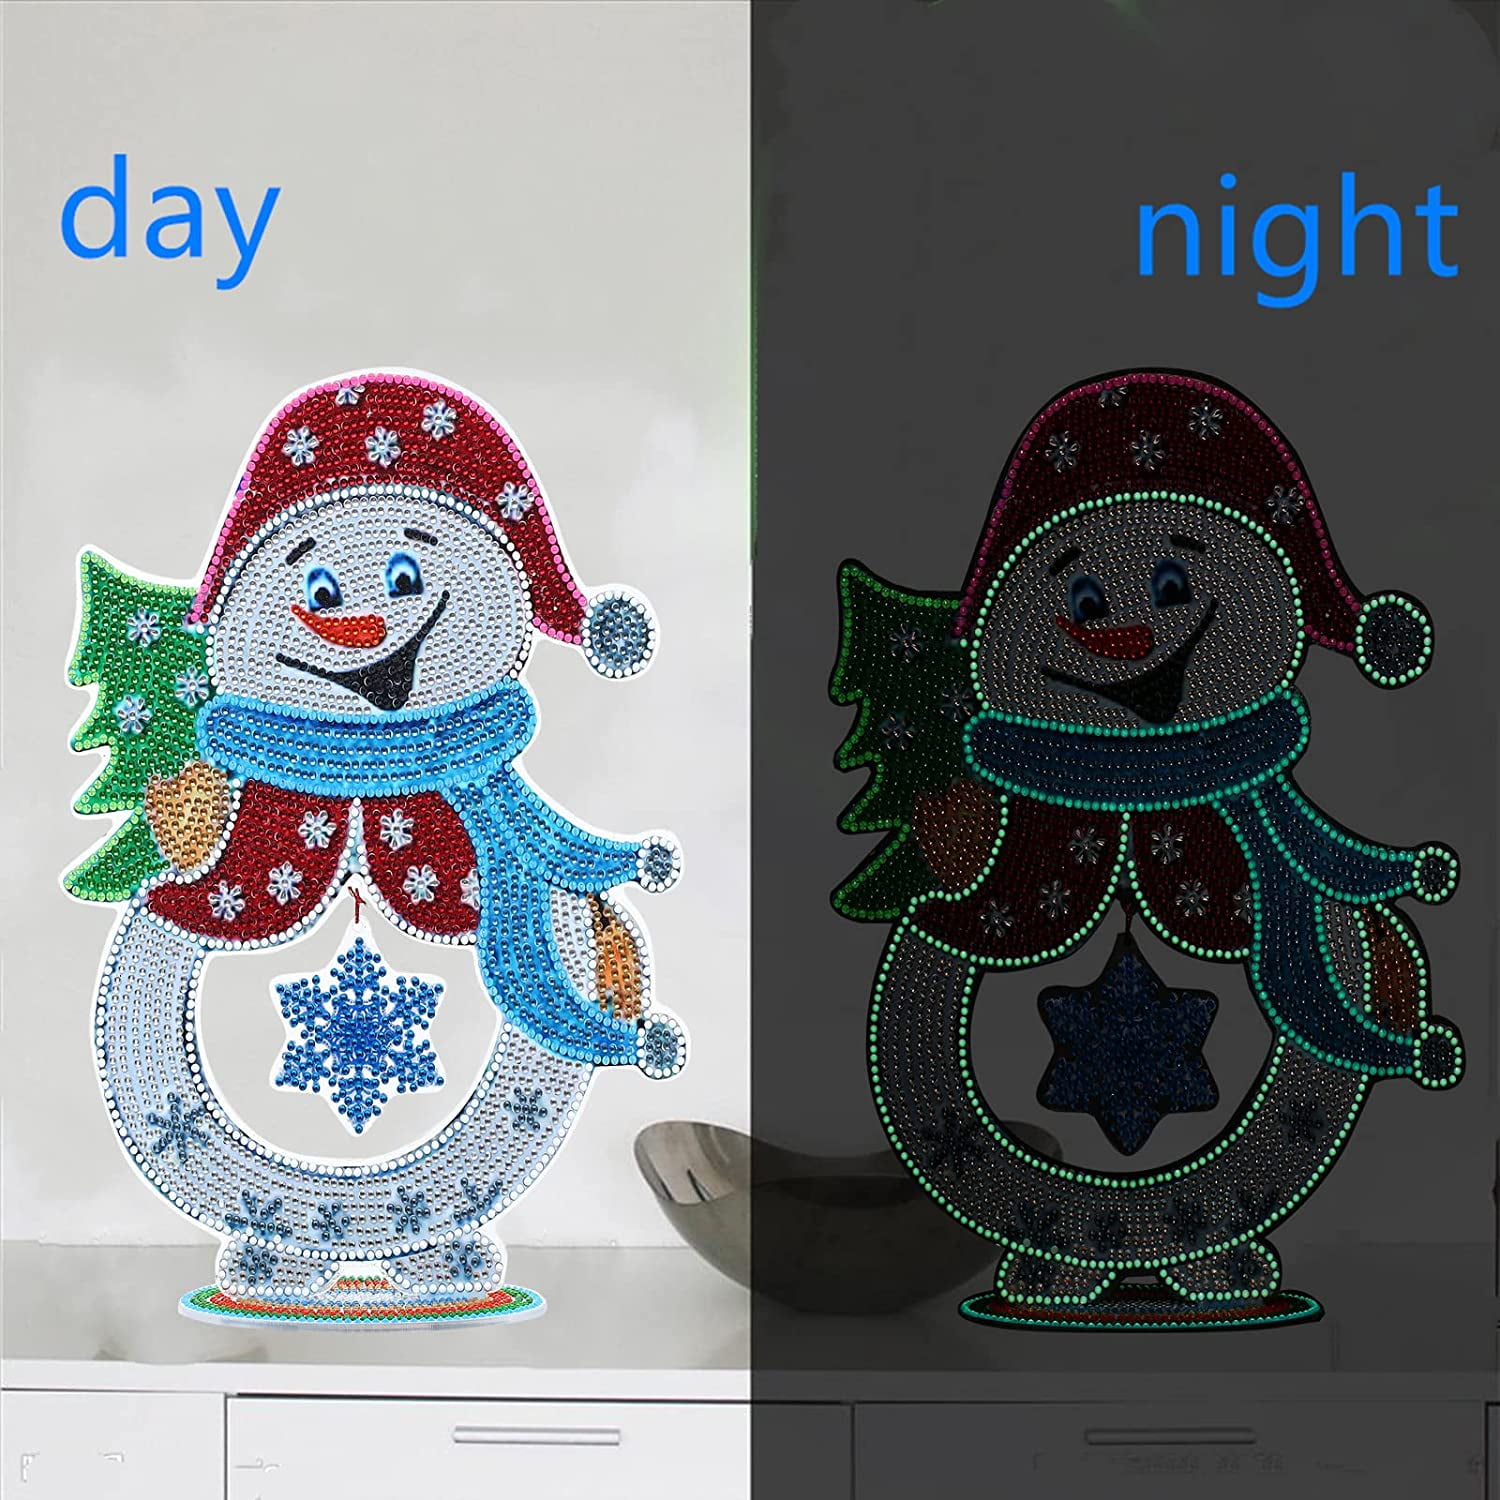 5D DIY DIAMOND Art Table Decor Scenery Snowman Christmas Decor